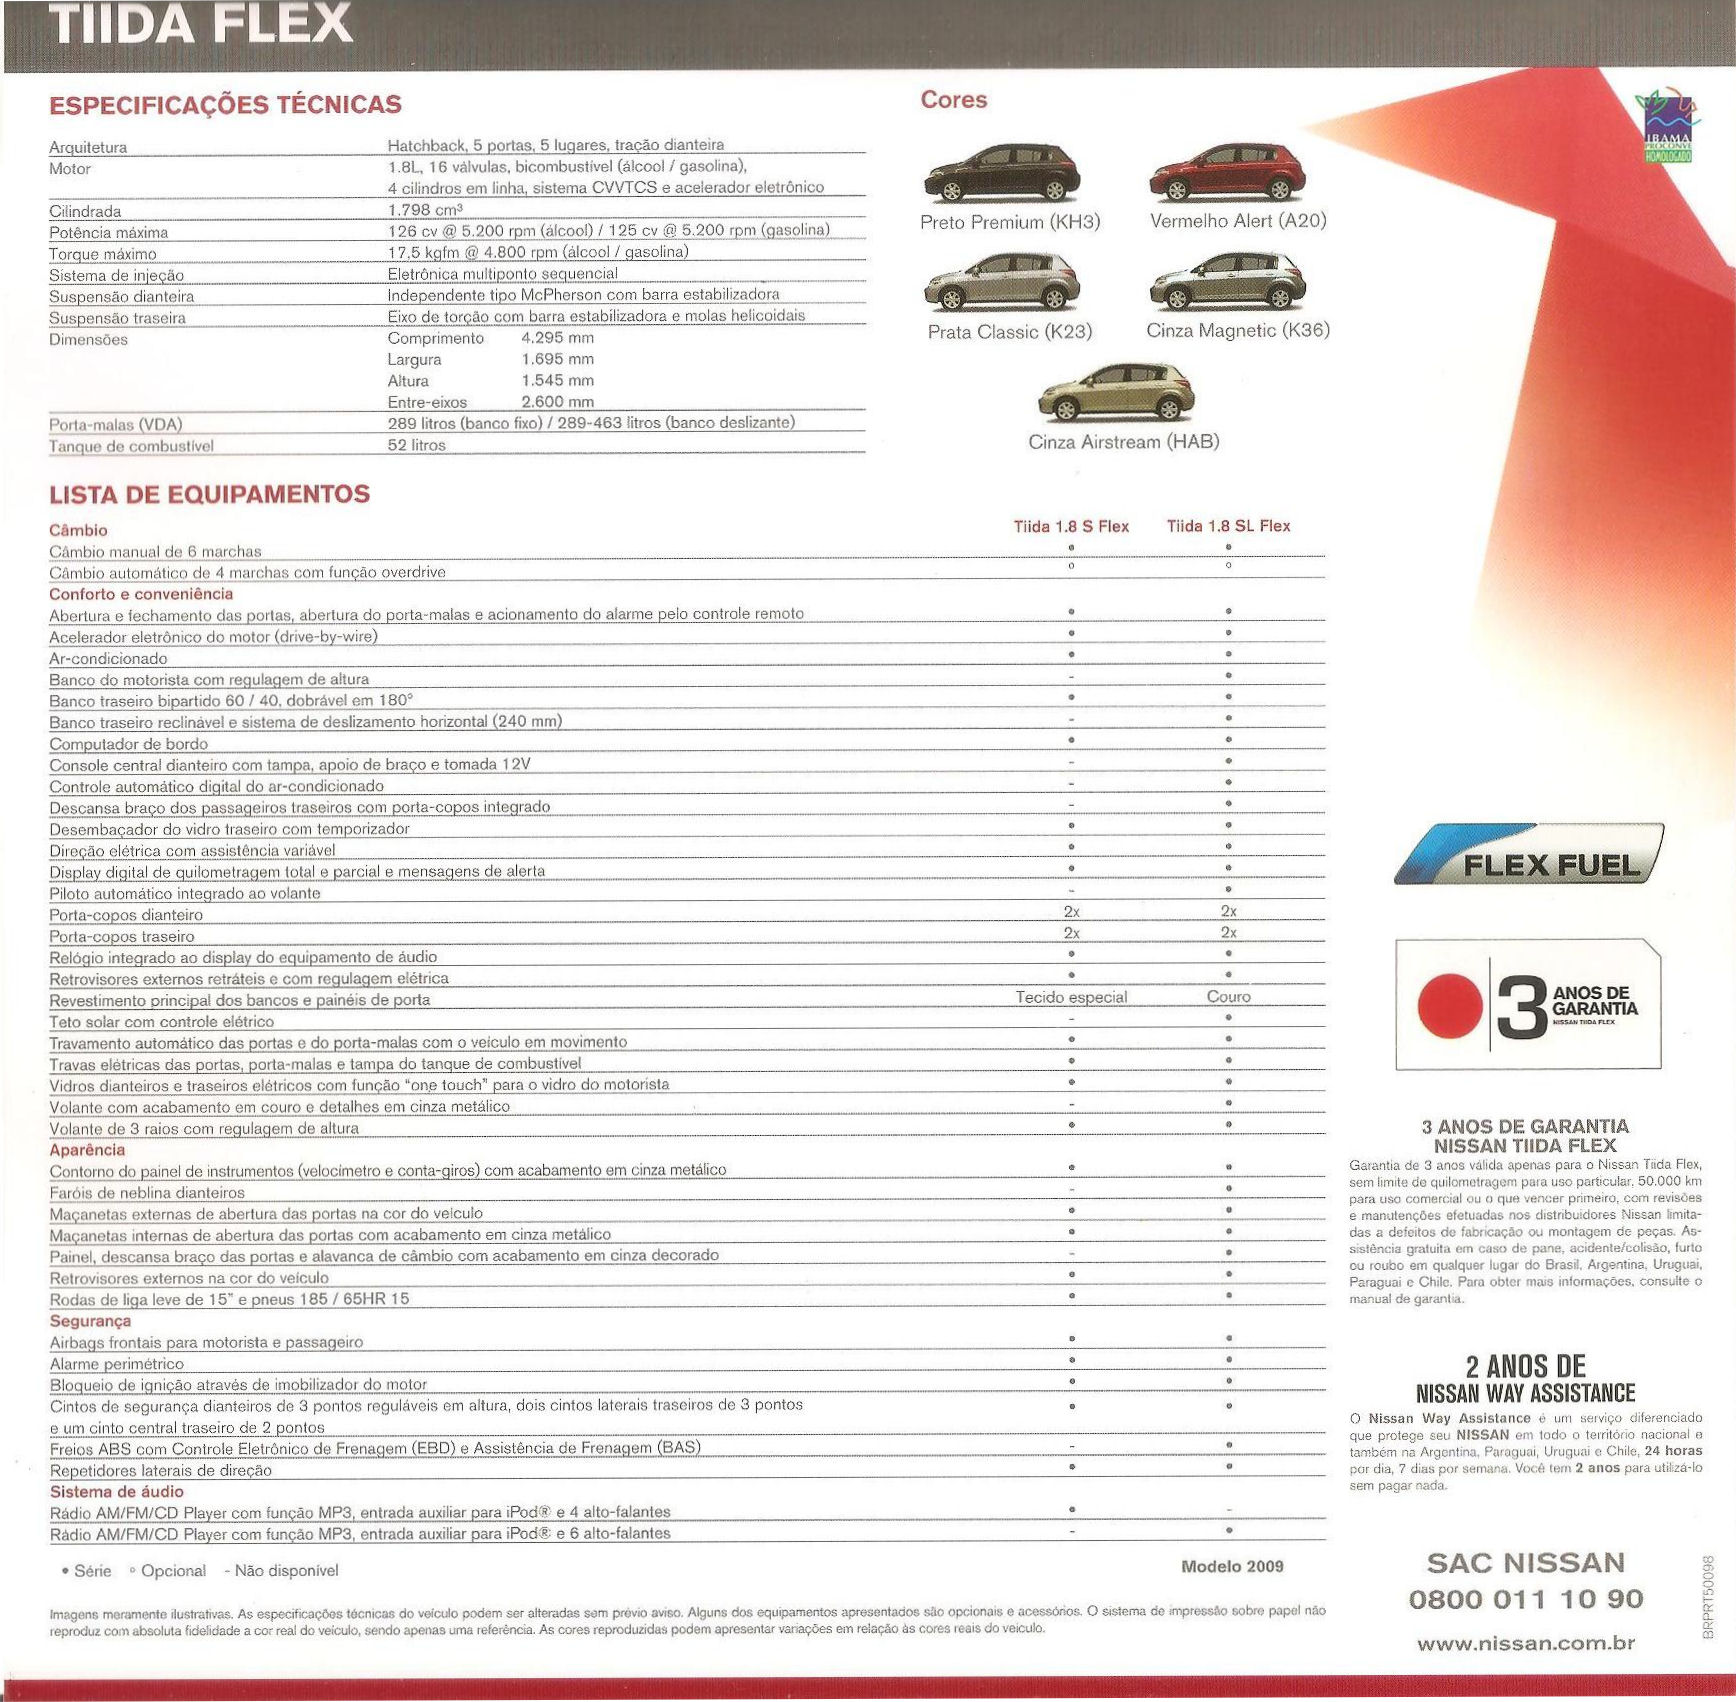 2009 Nissan Tiida brochure